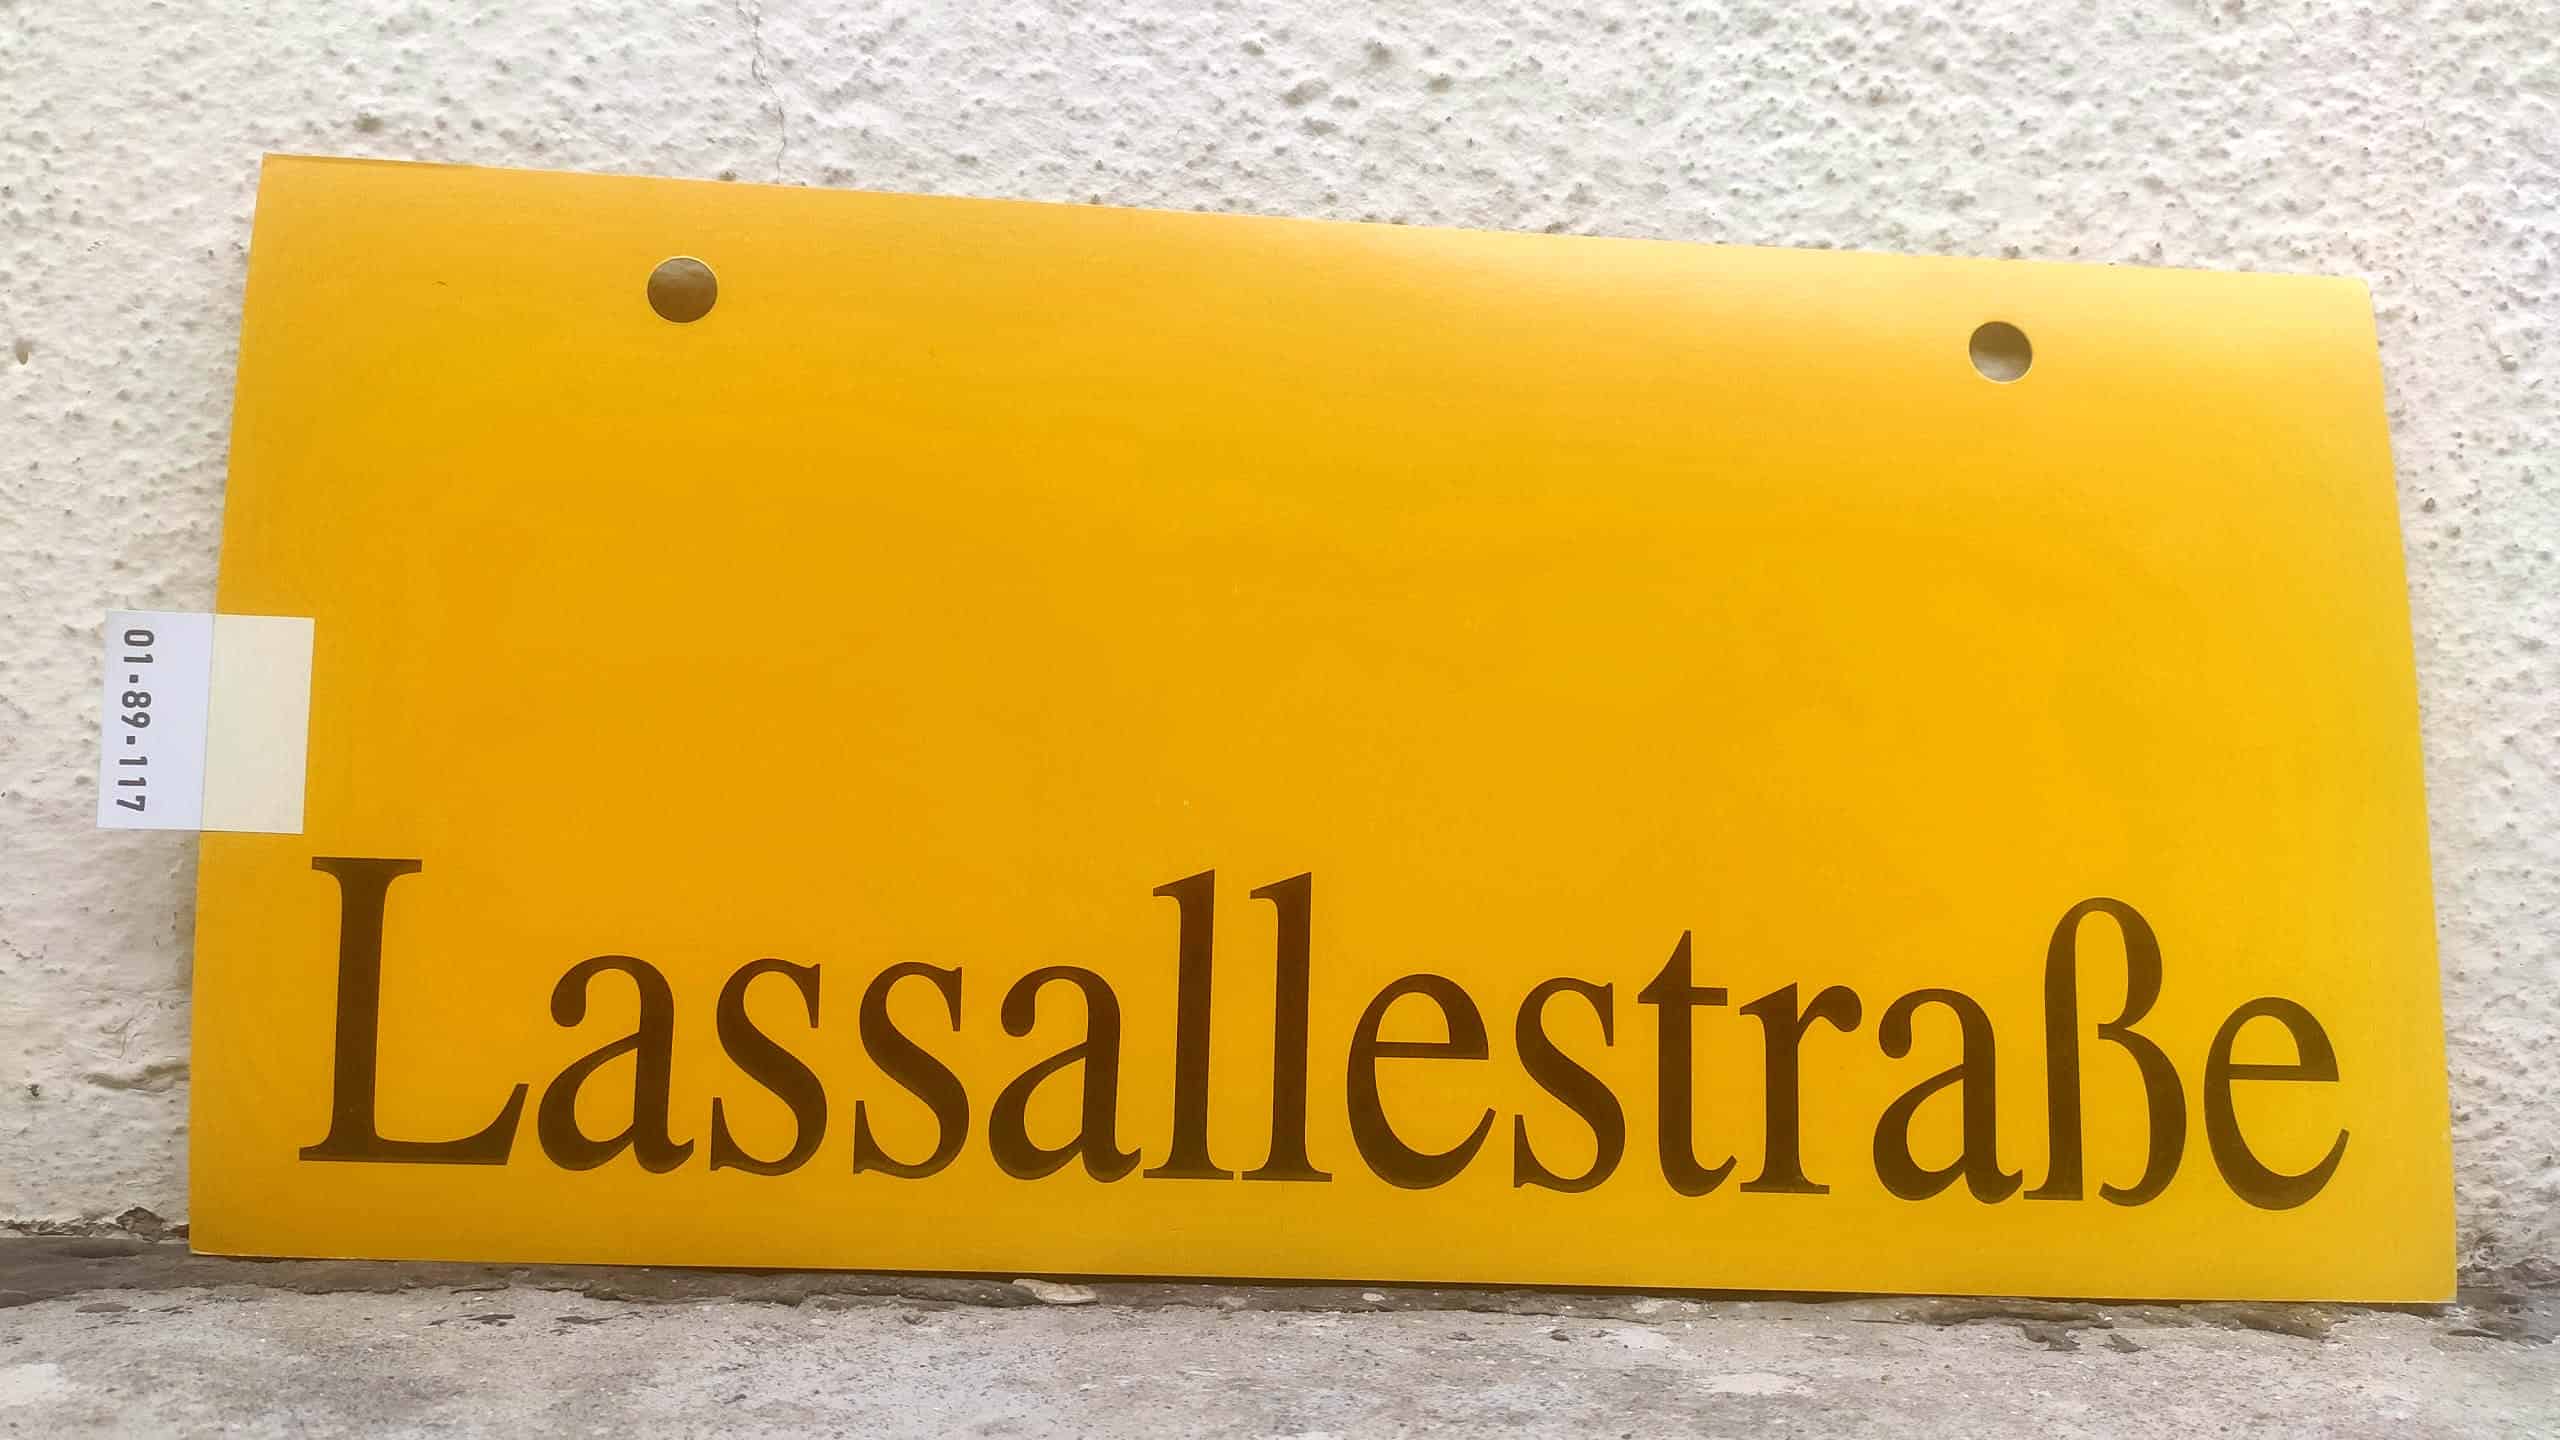 Lassallestraße